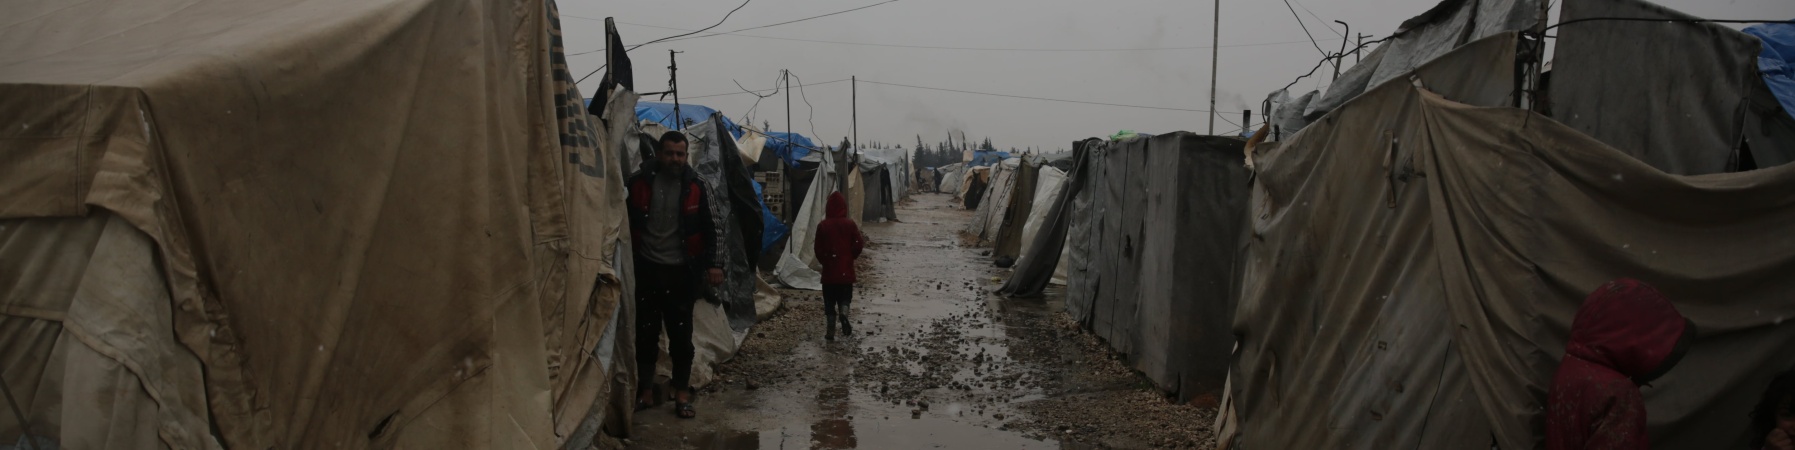 bambina in siria dopo 12 anni di guerra tra le tende in un campo per sfollati 